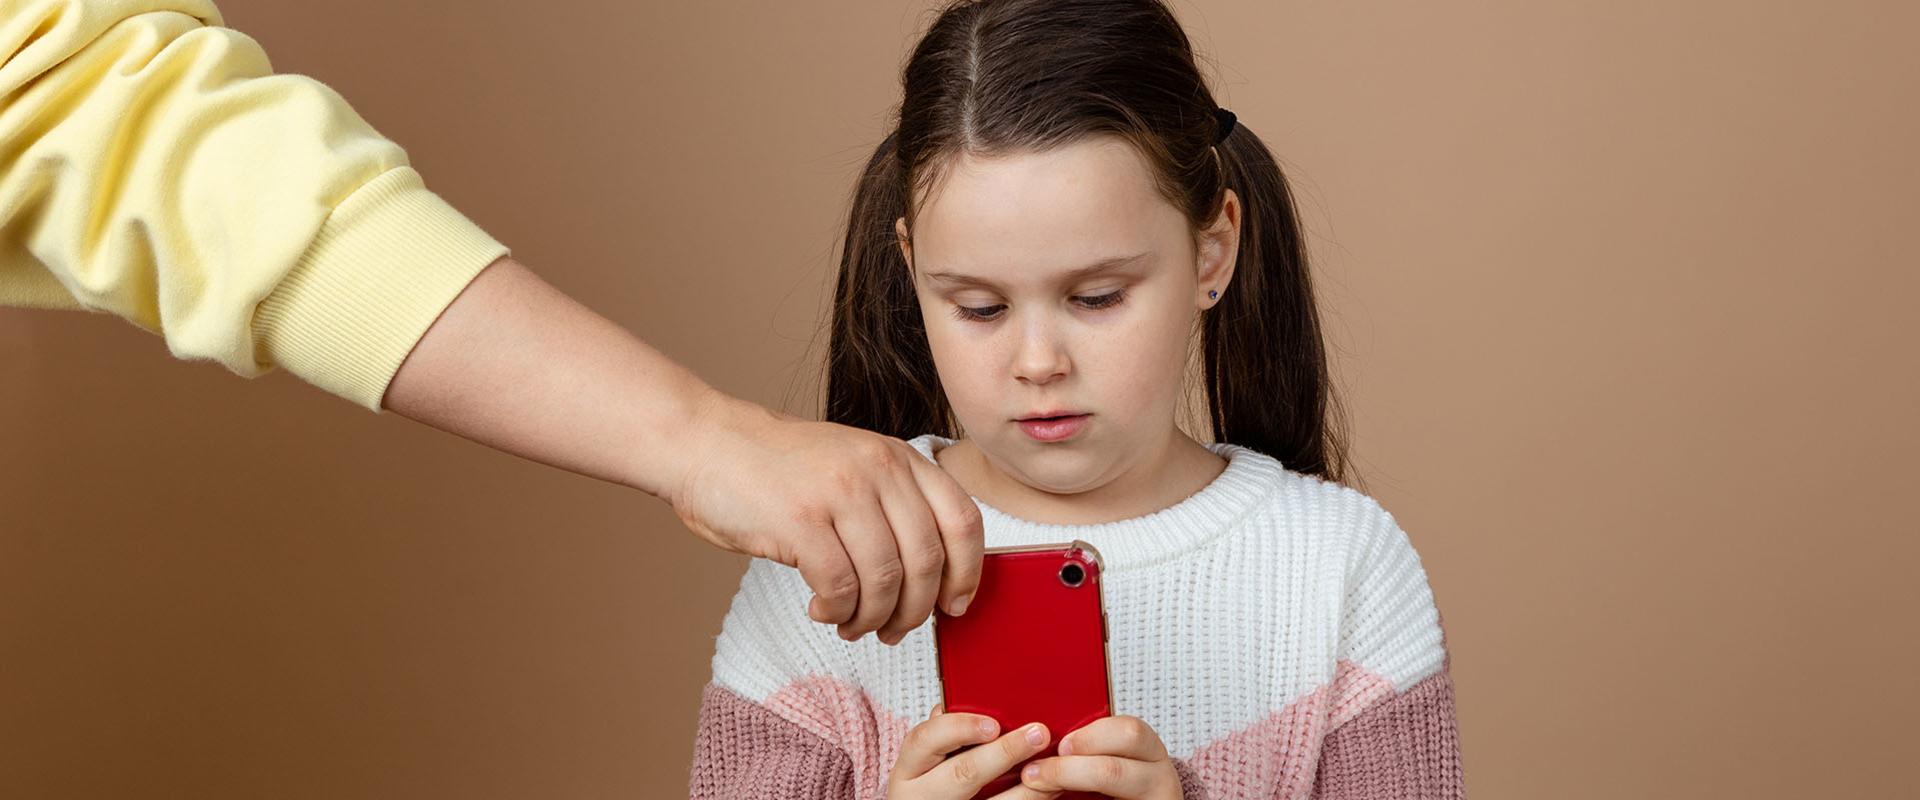 Floridában tiltani fogják, hogy a gyerekek közösségi médiát használjanak